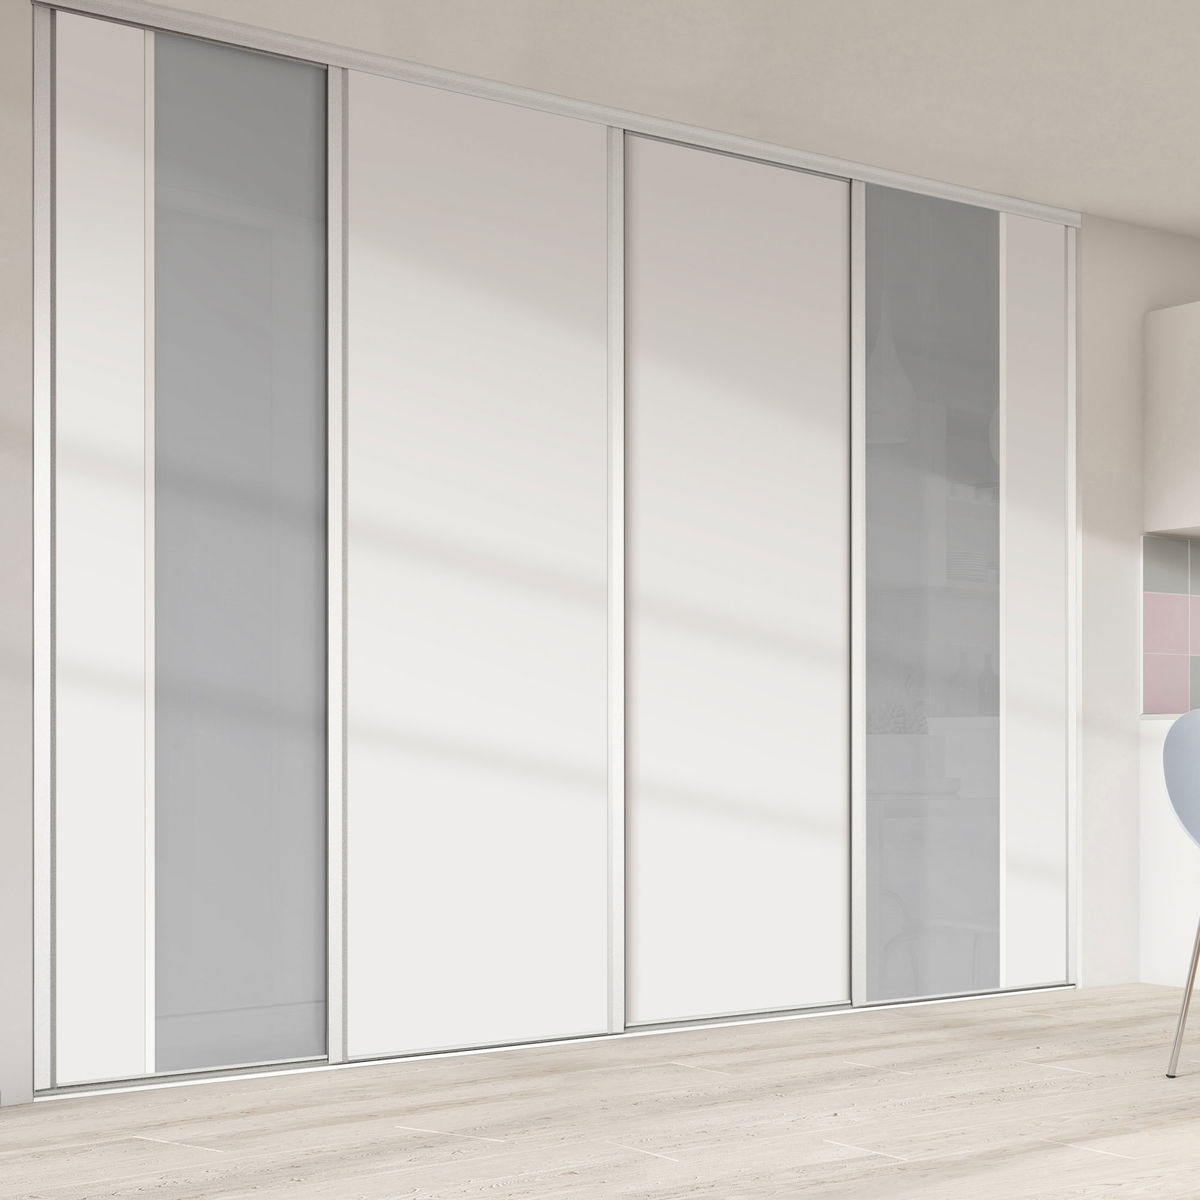 Façade de placard coulissante 4 portes verre laqué gris perle, décor blanc mat